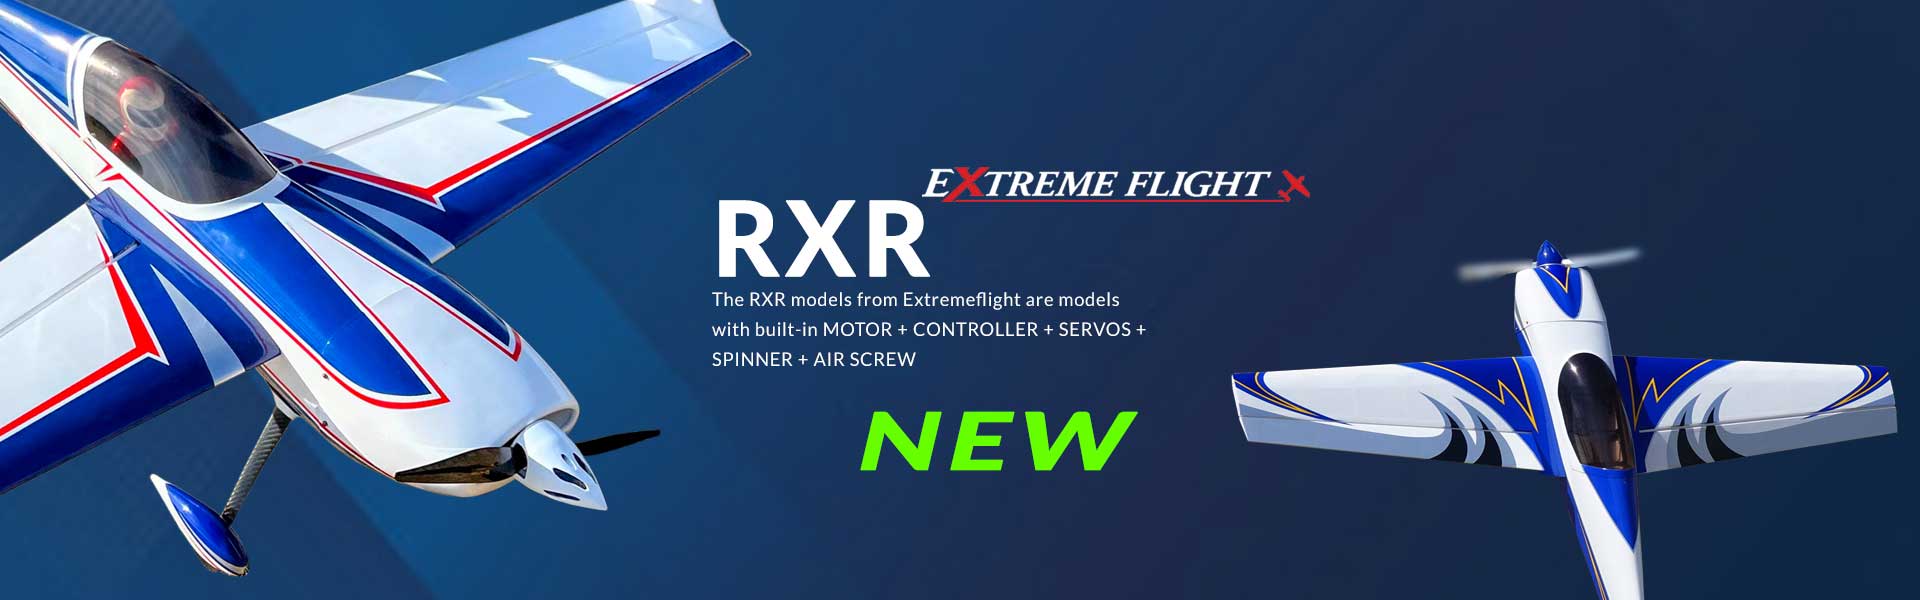 Extremeflight_RXR-1920x600__EN